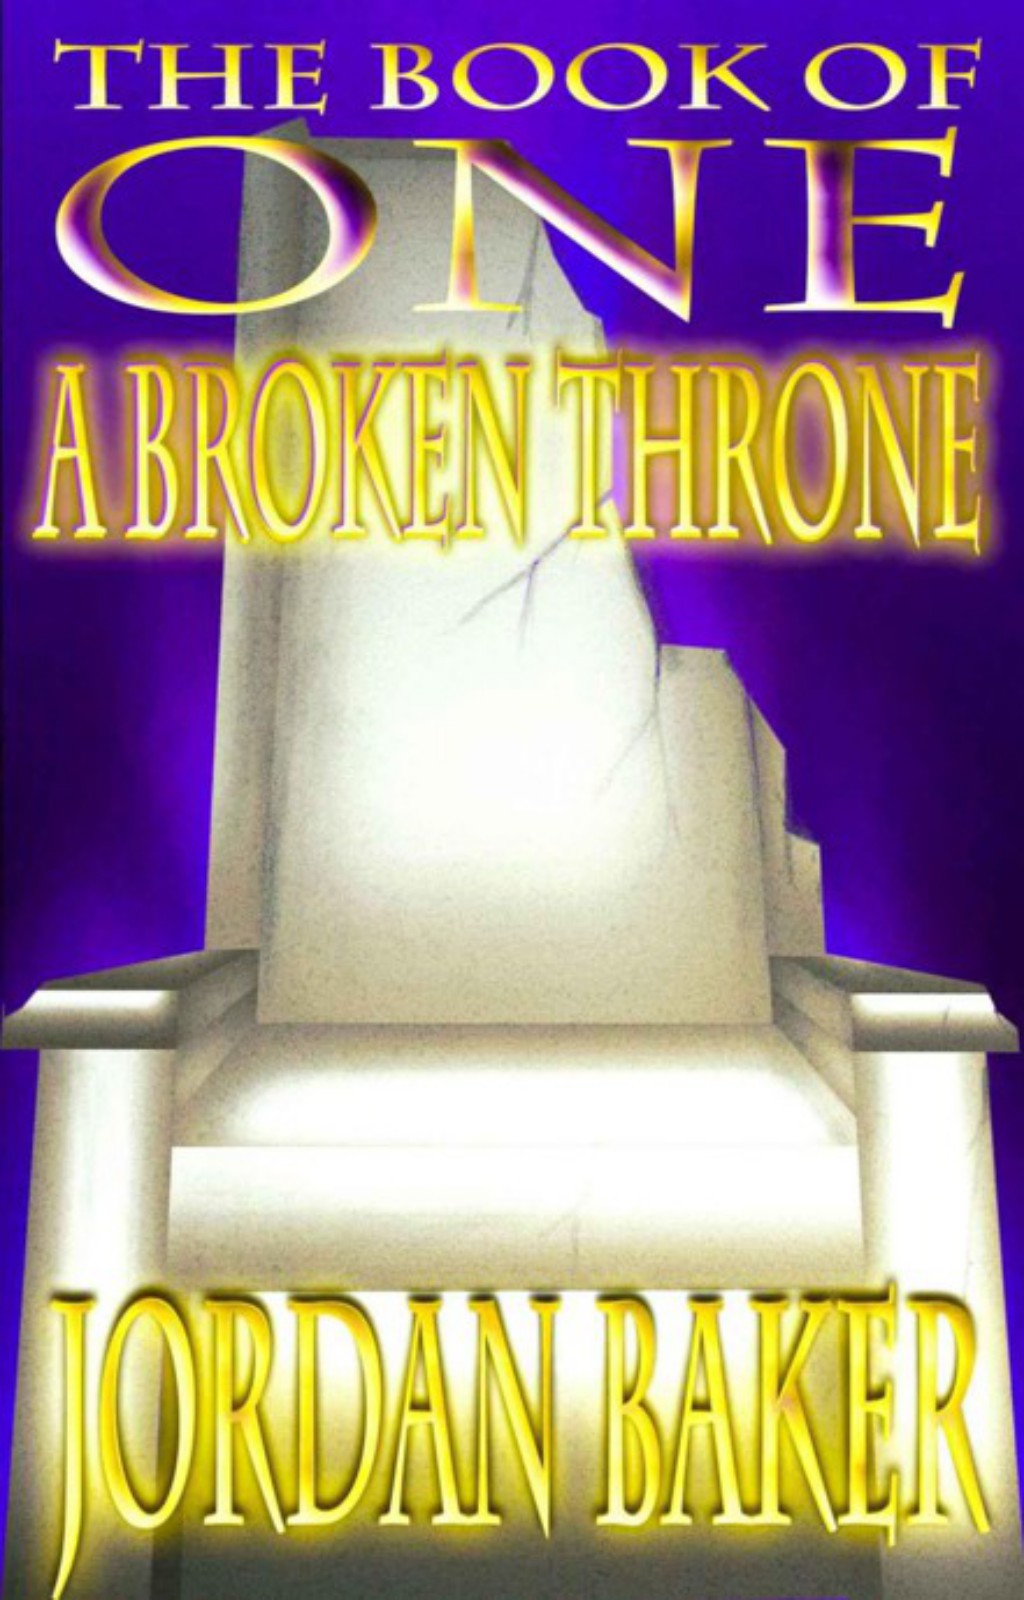 A Broken Throne